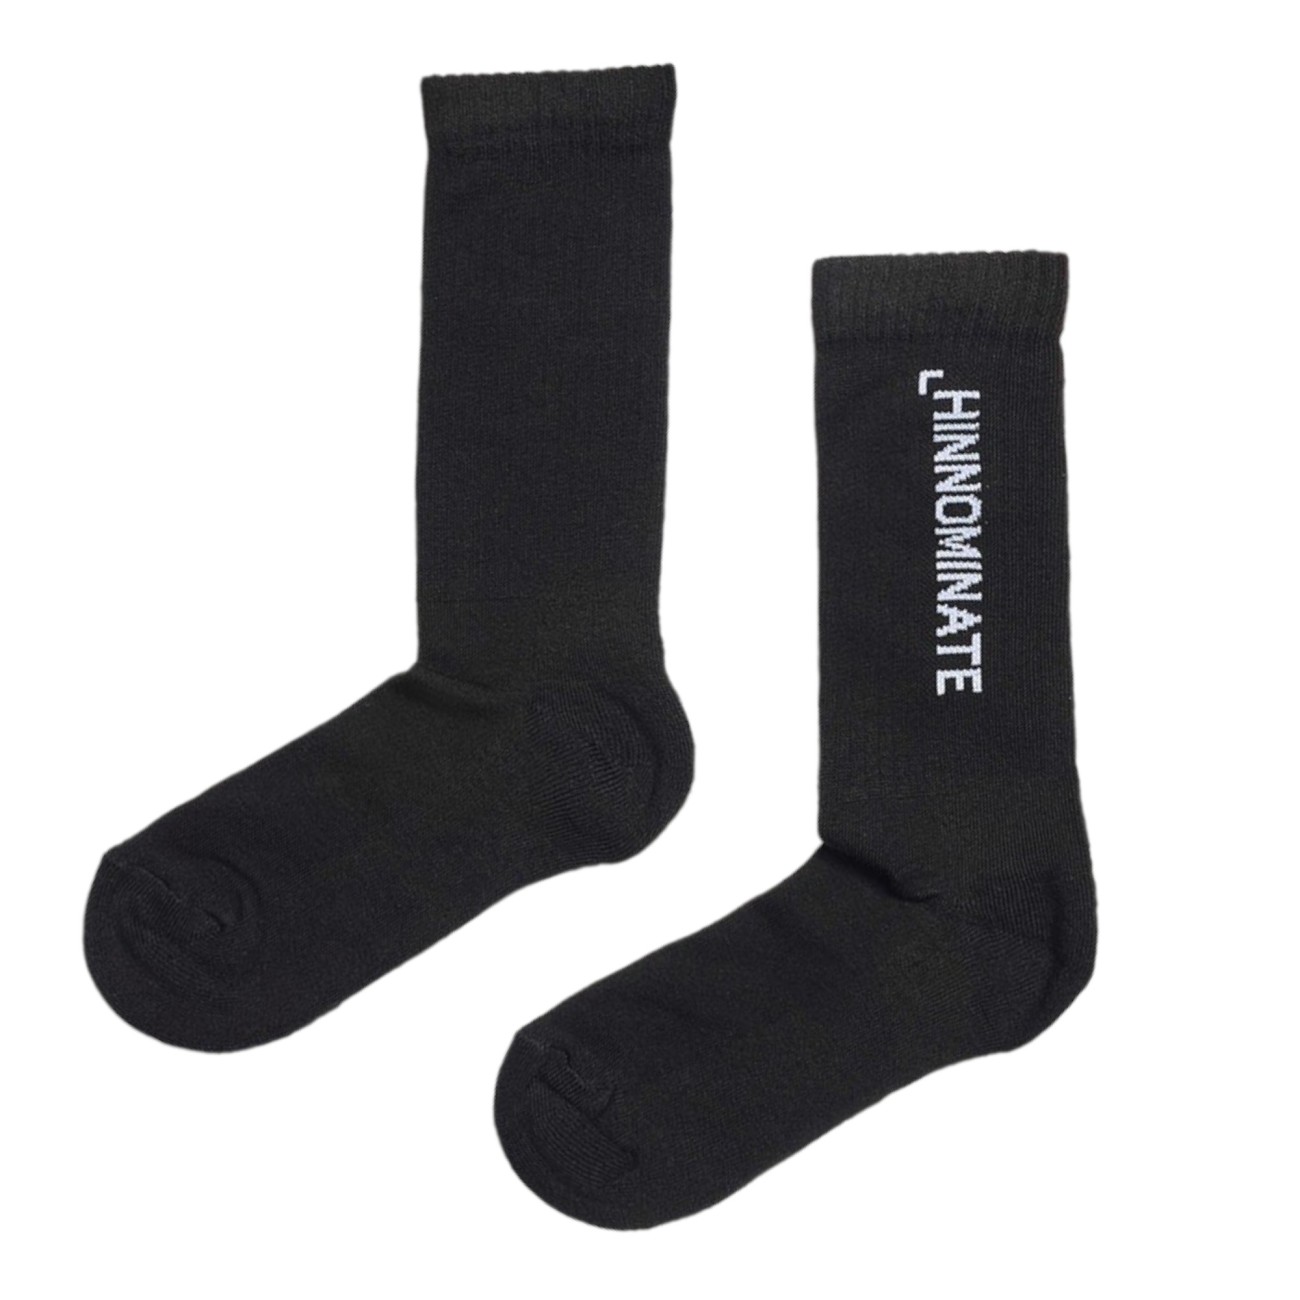 Hinnominate black terry socks